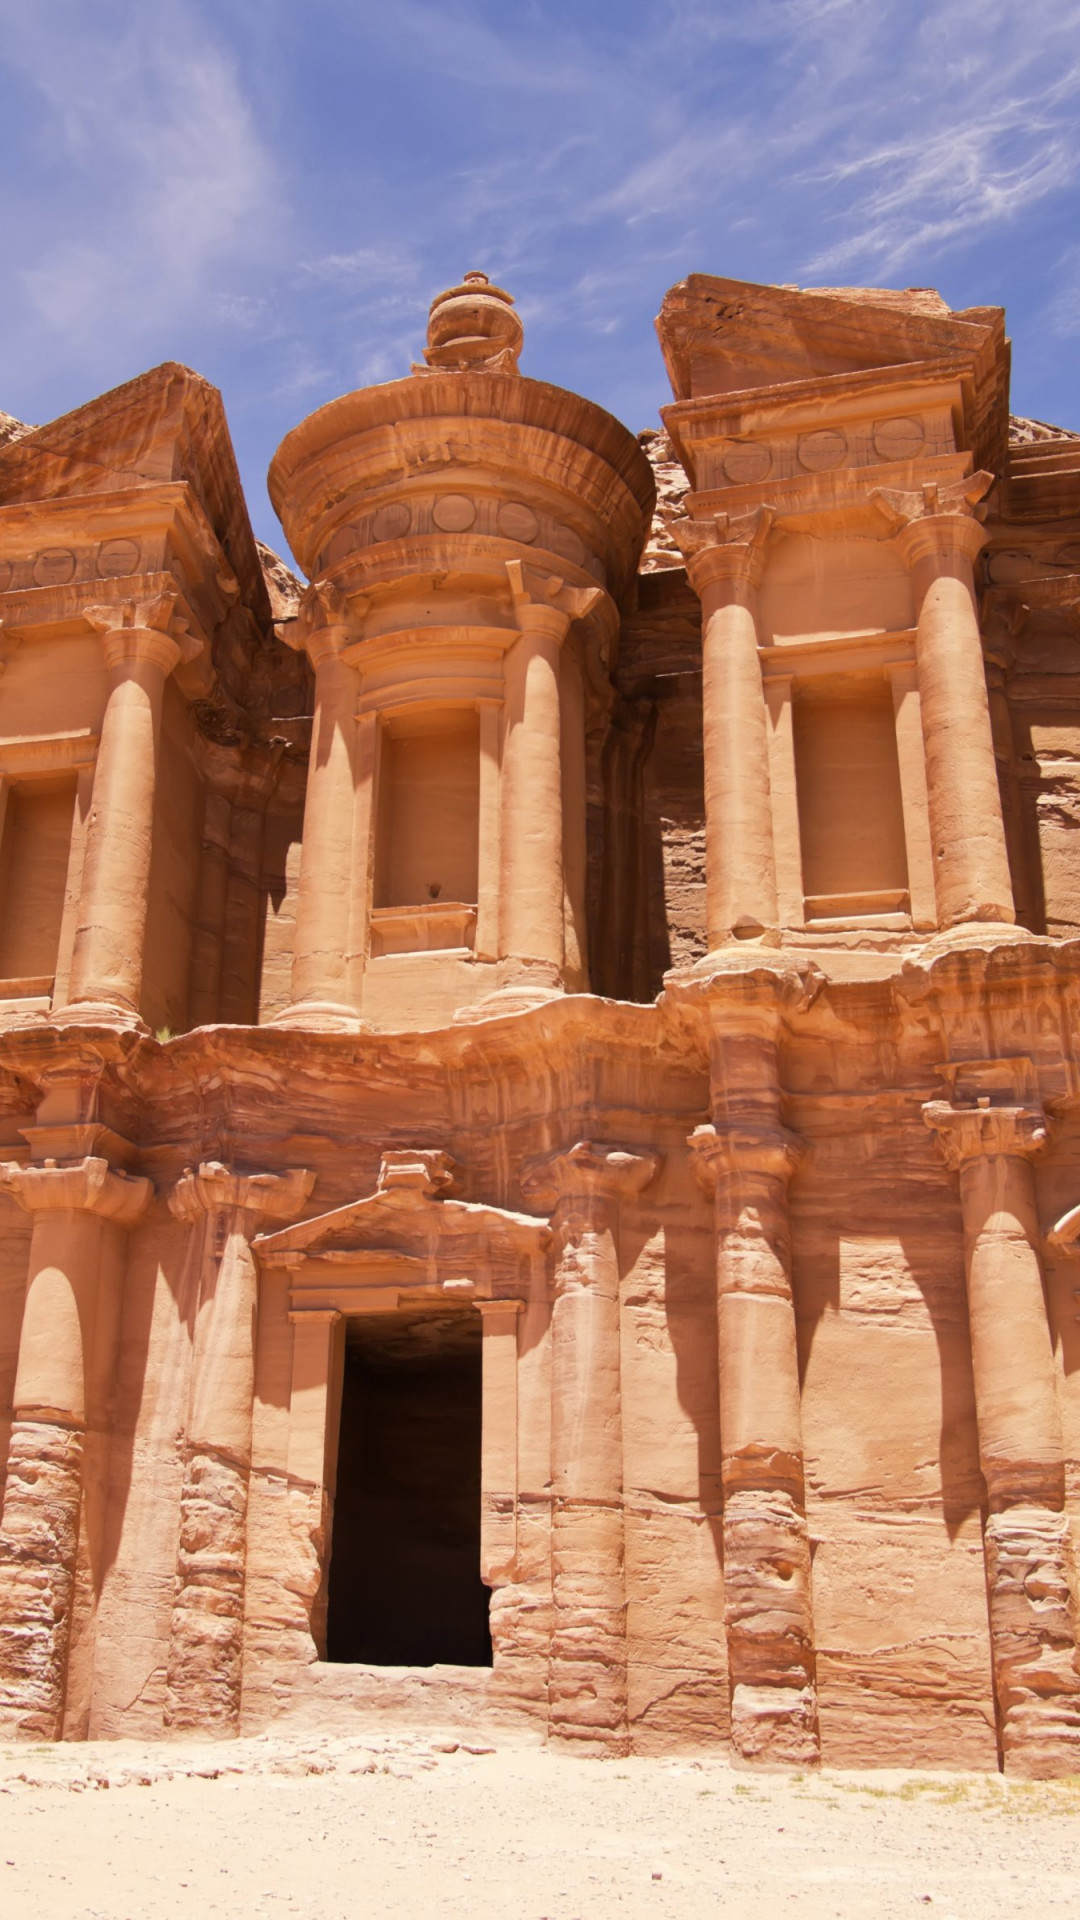 Petra, HD desktop wallpaper, Jordan travel, Historical wonders, 1080x1920 Full HD Phone